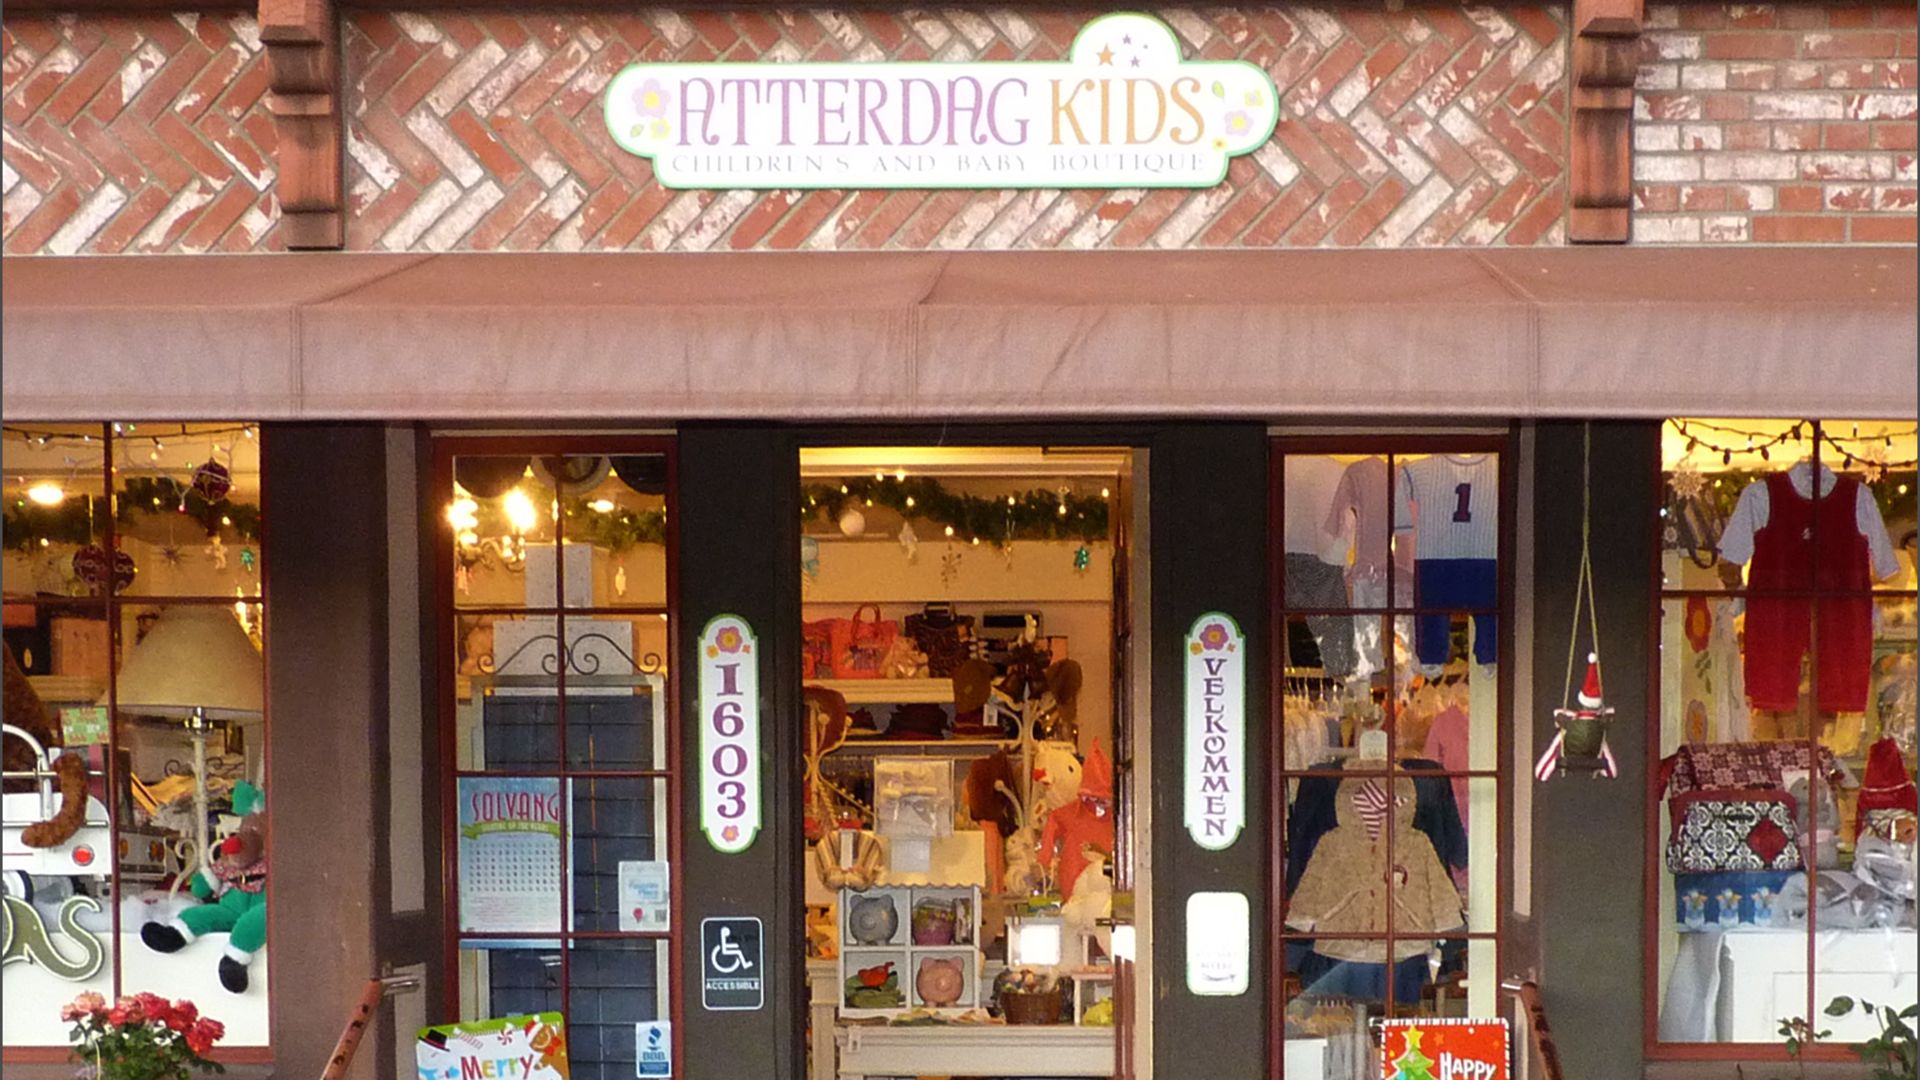 Atterdag Kids- Children’s & Baby Boutique